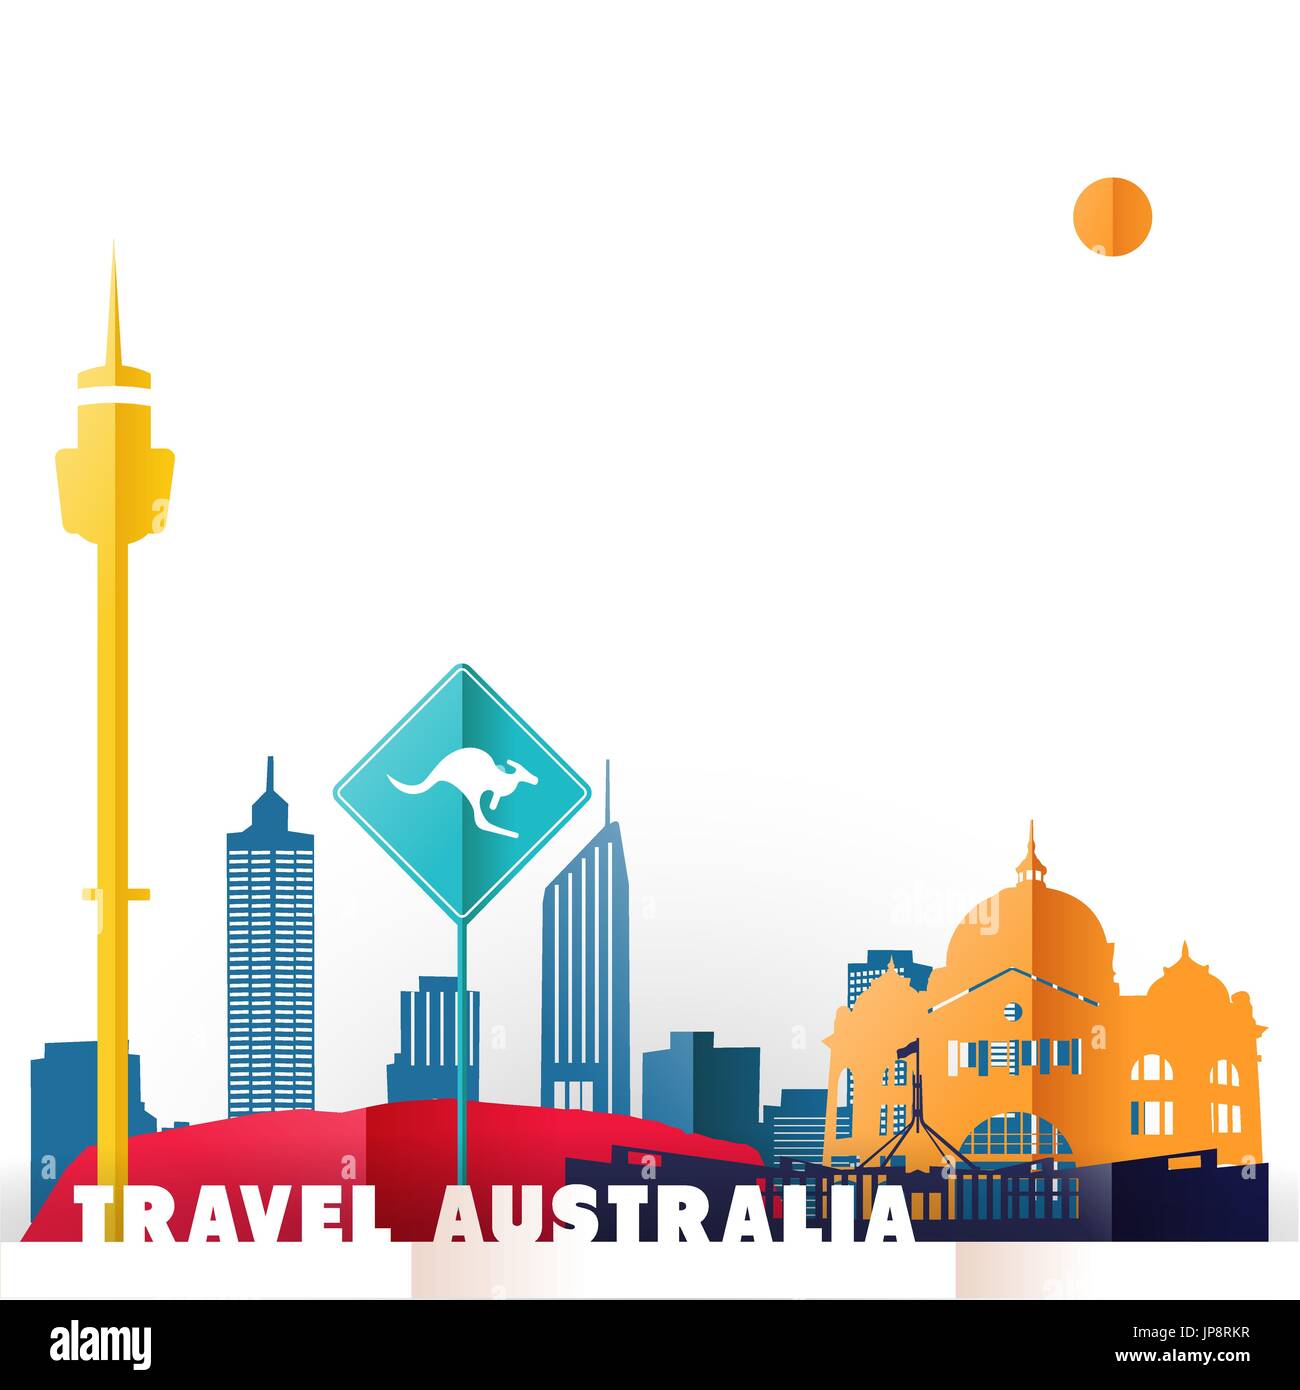 Reisen Sie Australien Konzept Abbildung in Papier schneiden Stil, weltberühmten Wahrzeichen der australischen Land. Enthält Sydney tower, Känguru unterzeichnen, Melbourn Stock Vektor